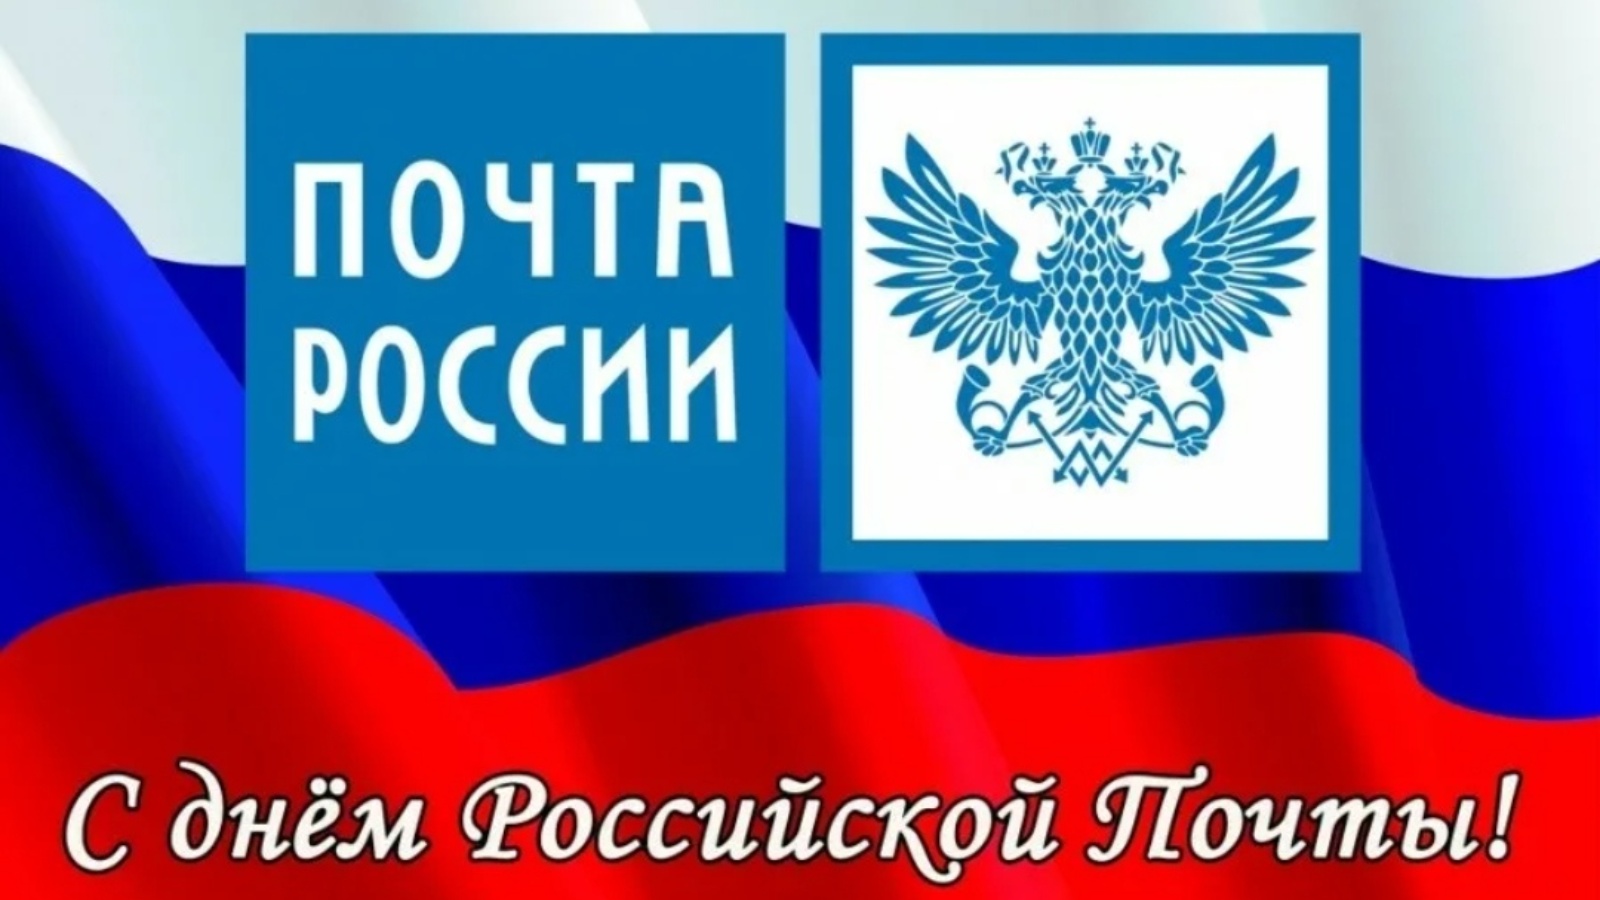 Почта России поздравление